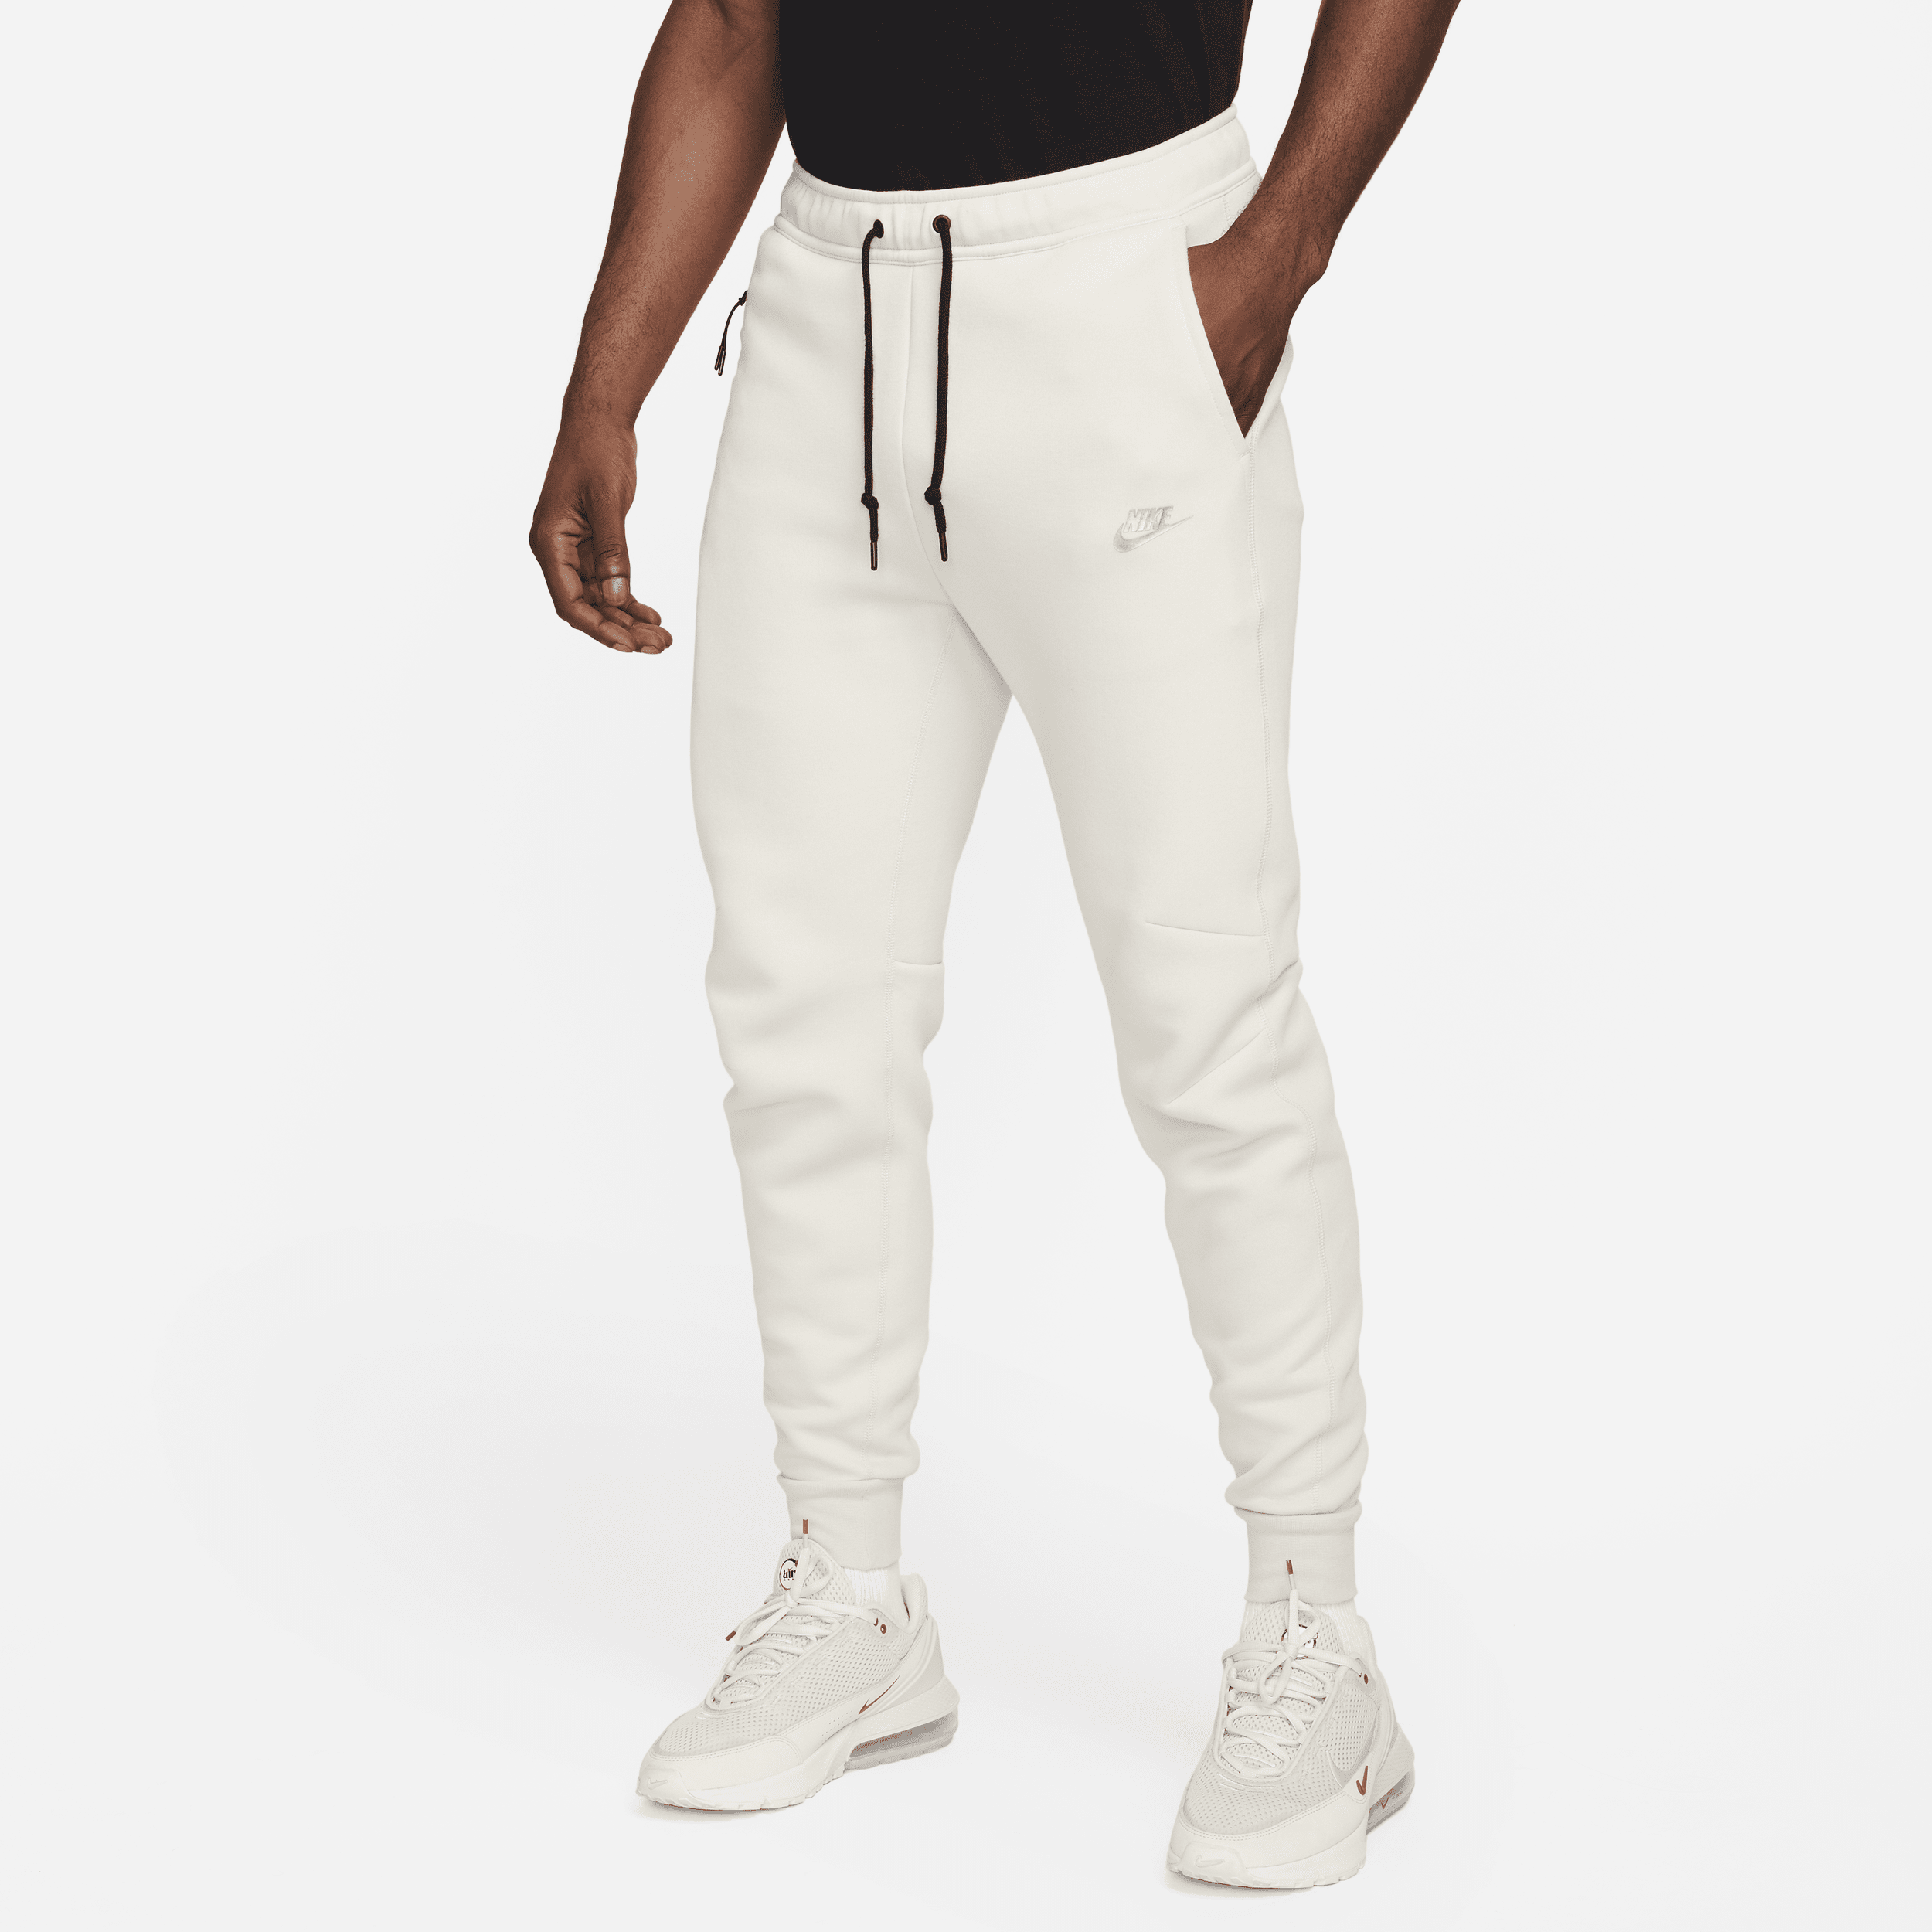 Nike Sportswear Tech Fleece Joggingbroek voor heren - Bruin